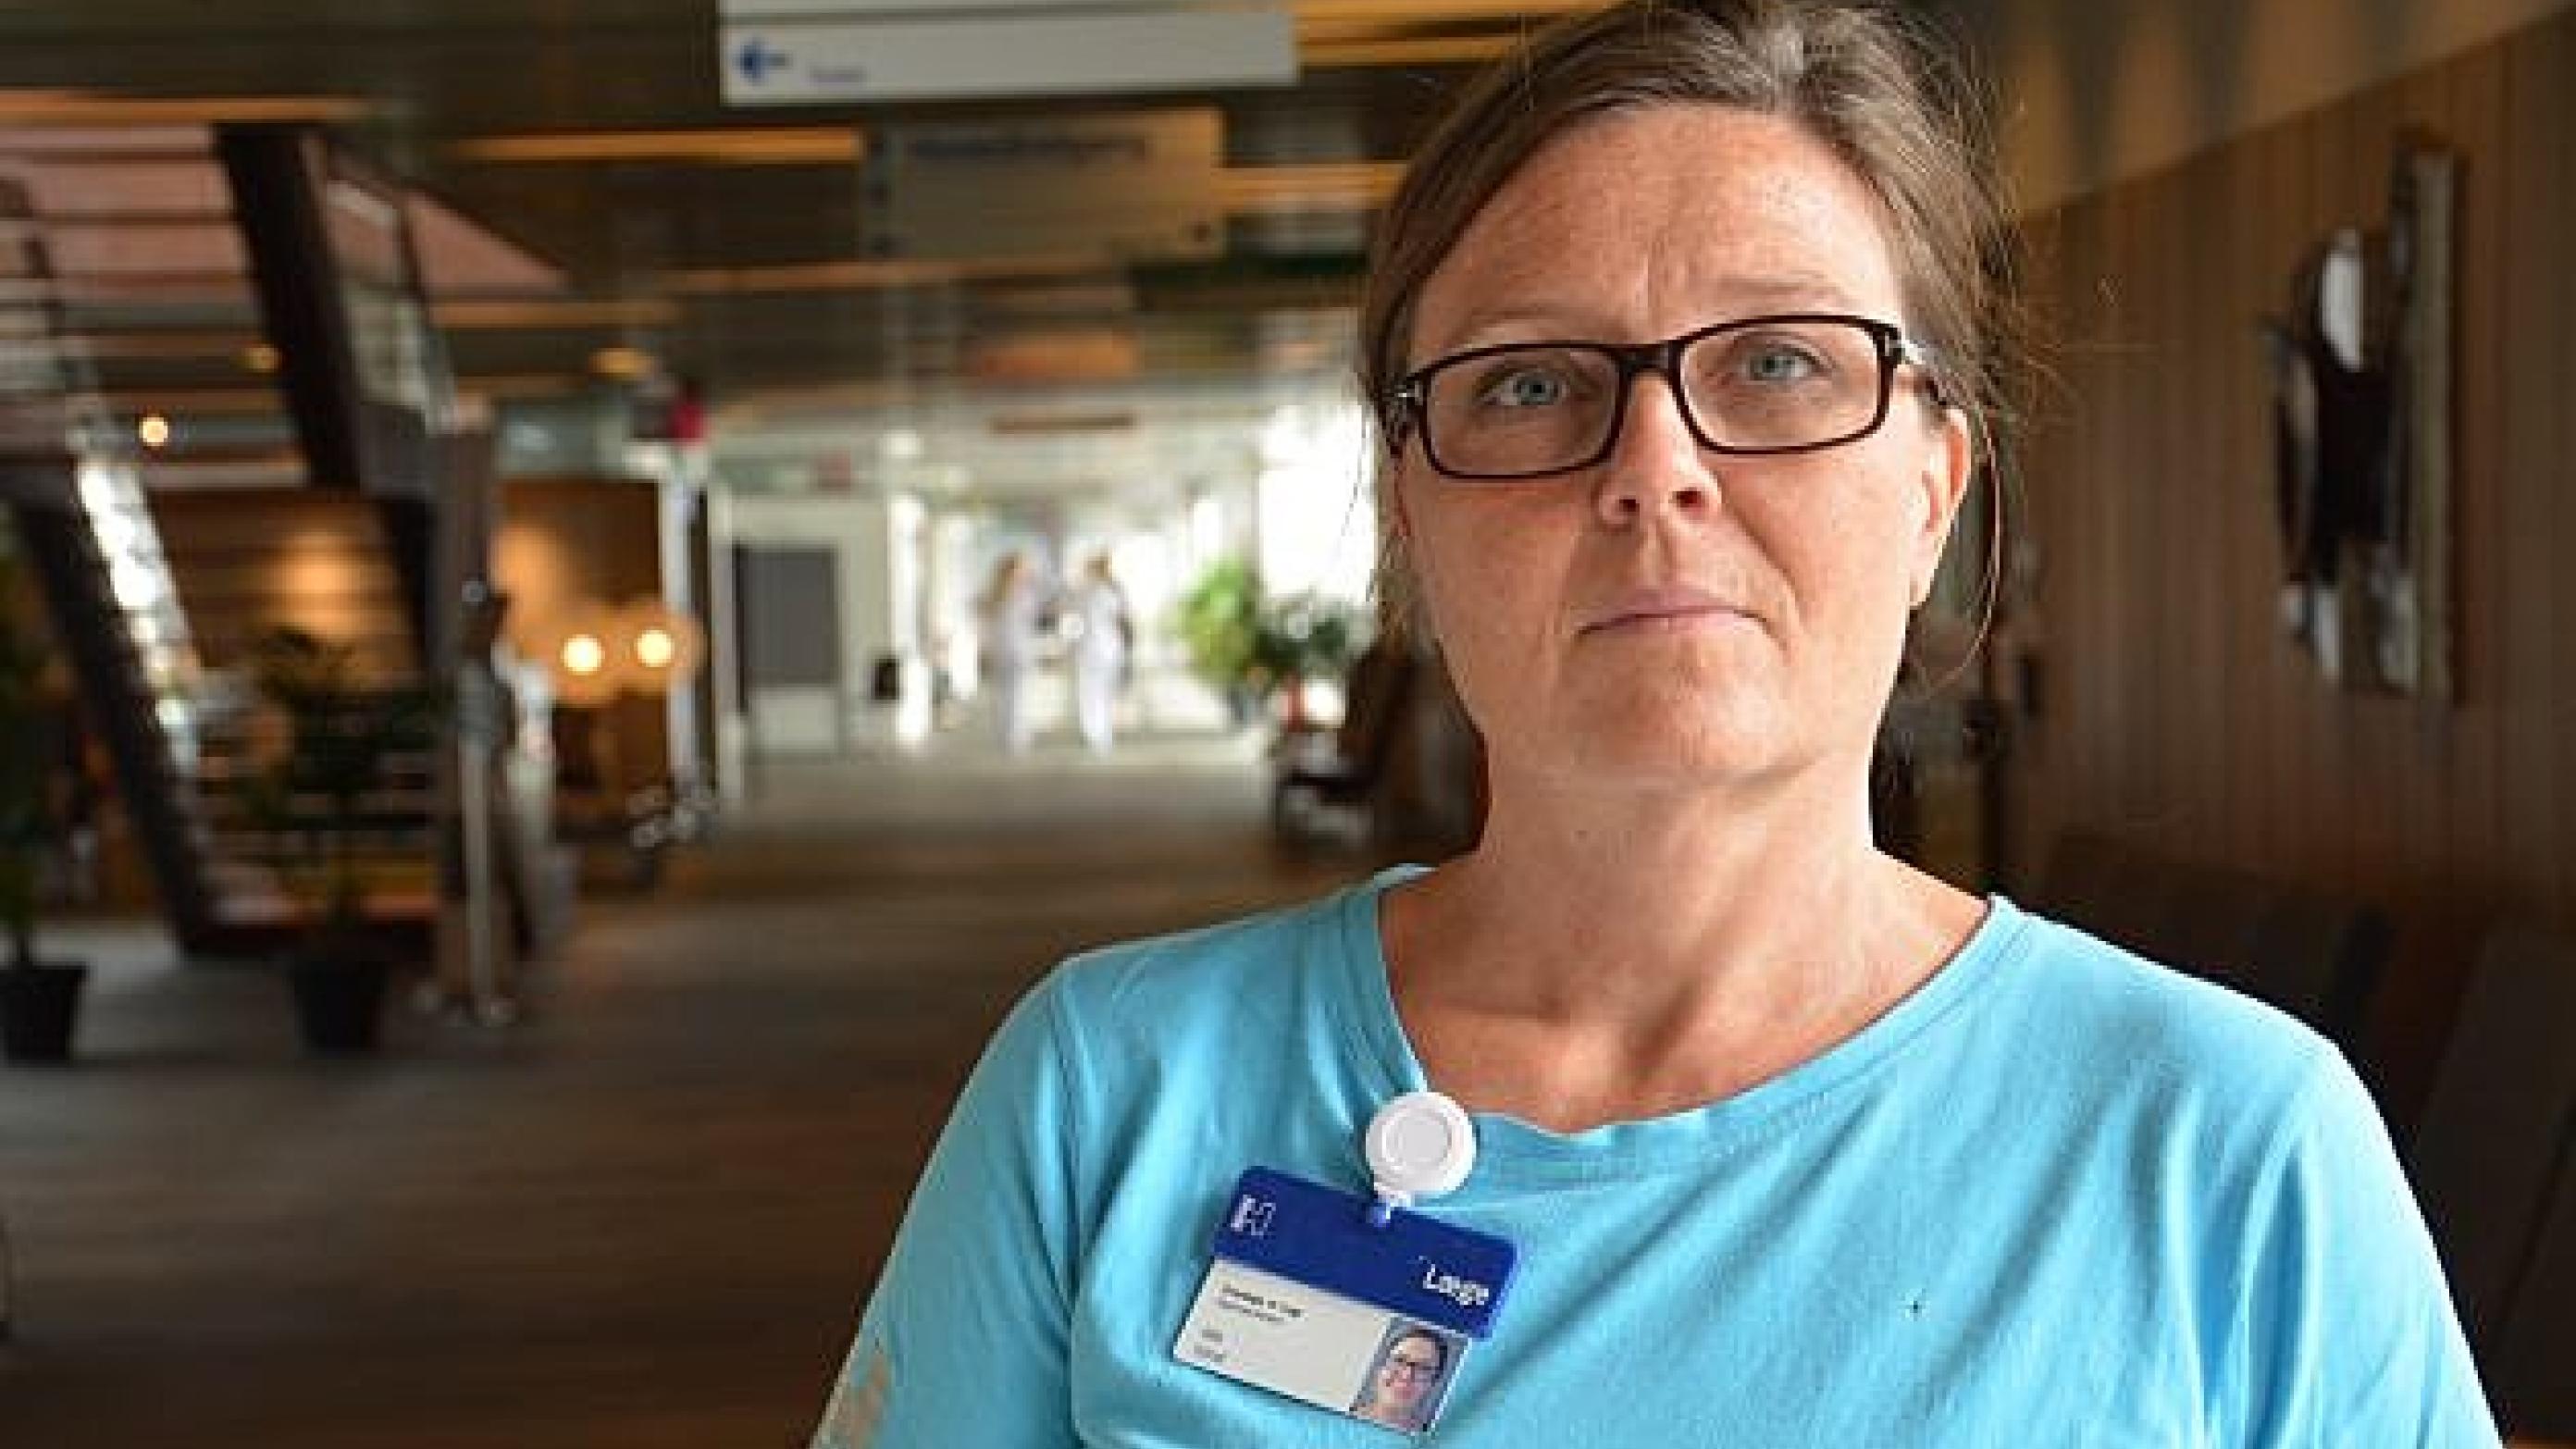 Ida Vind er overlæge på Hvidovre Hospital og blev filmet med skjult kamera i forbindelse med en TV2-dokumentar, der bliver sendt på torsdag. Foto: Hvidovre Hospital